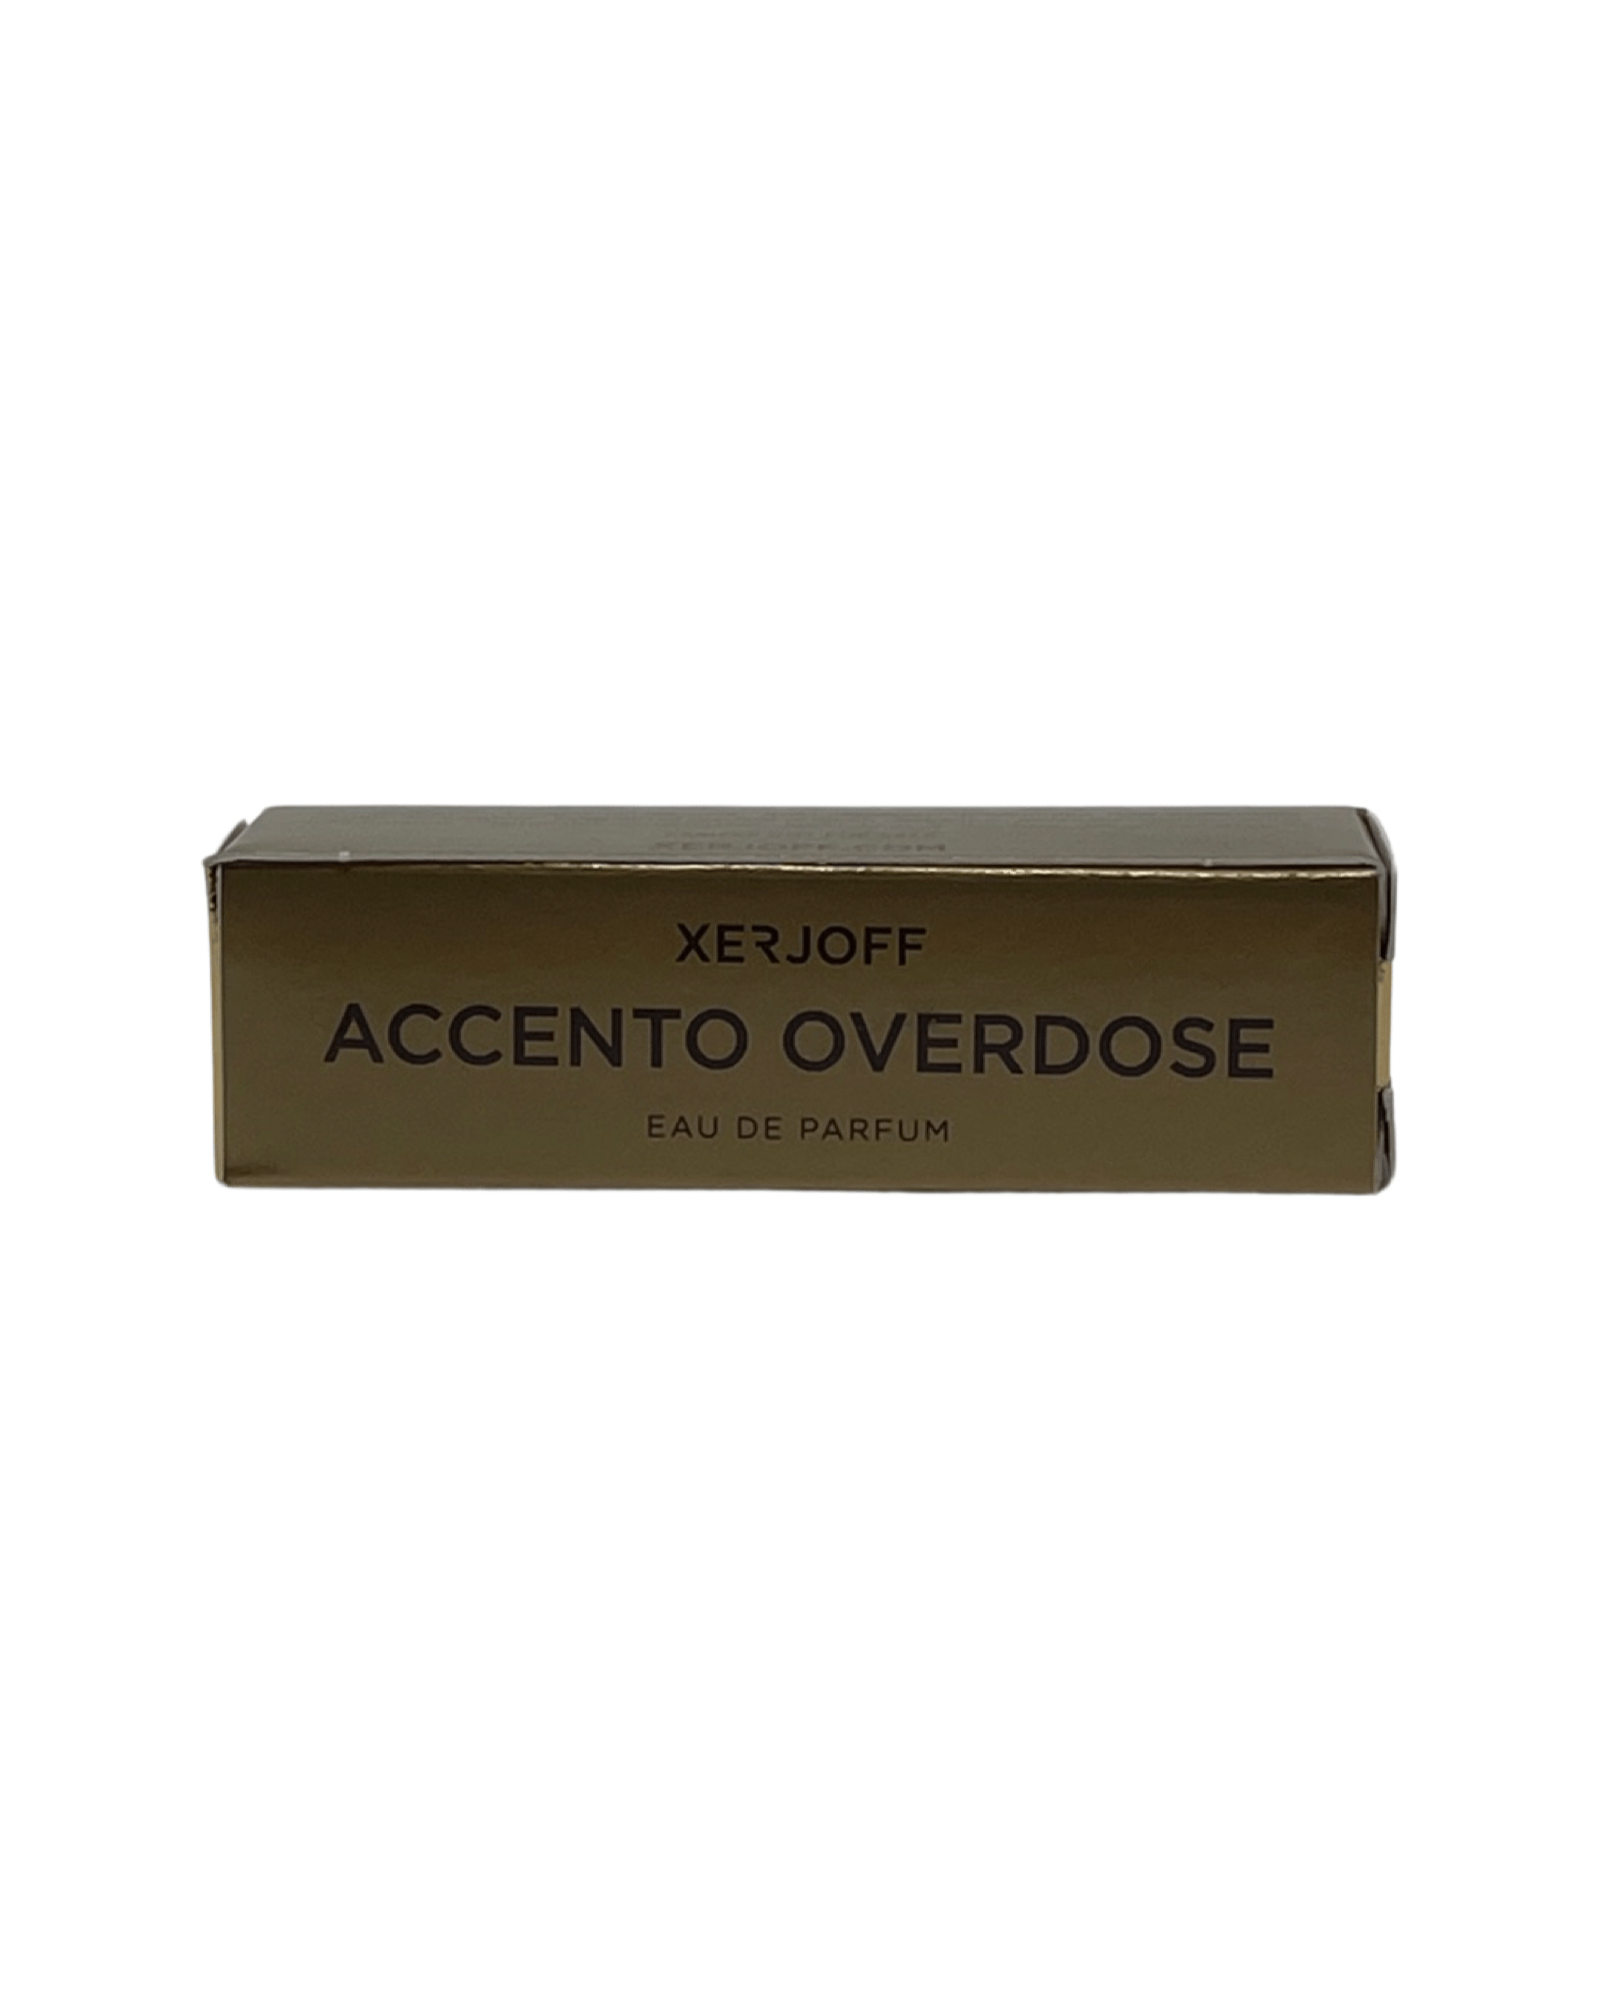 Xerjoff - Accento Overdose - 2ml.